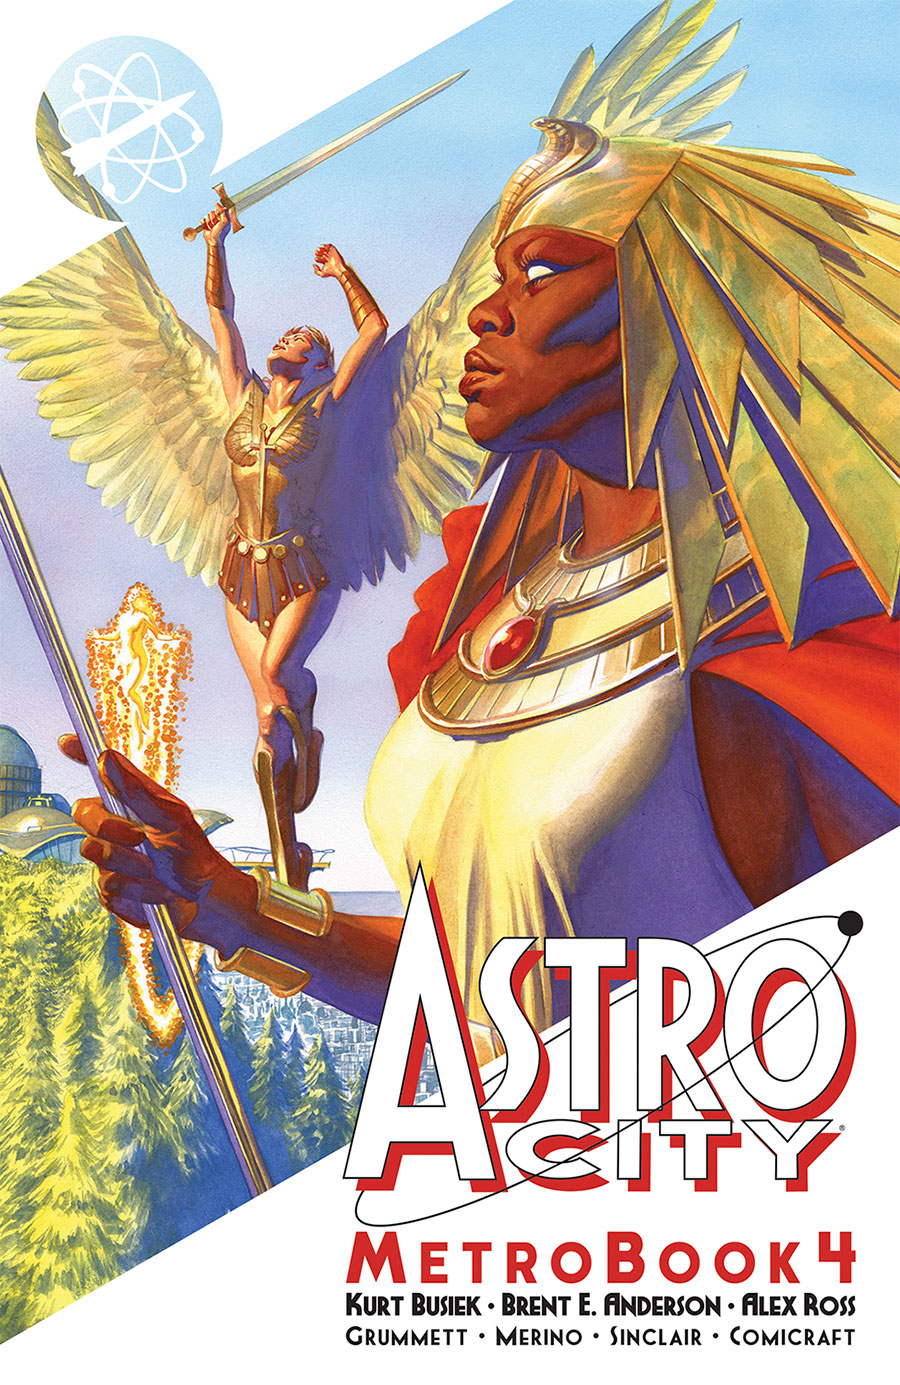 Astro City Metrobook Vol 4 TP